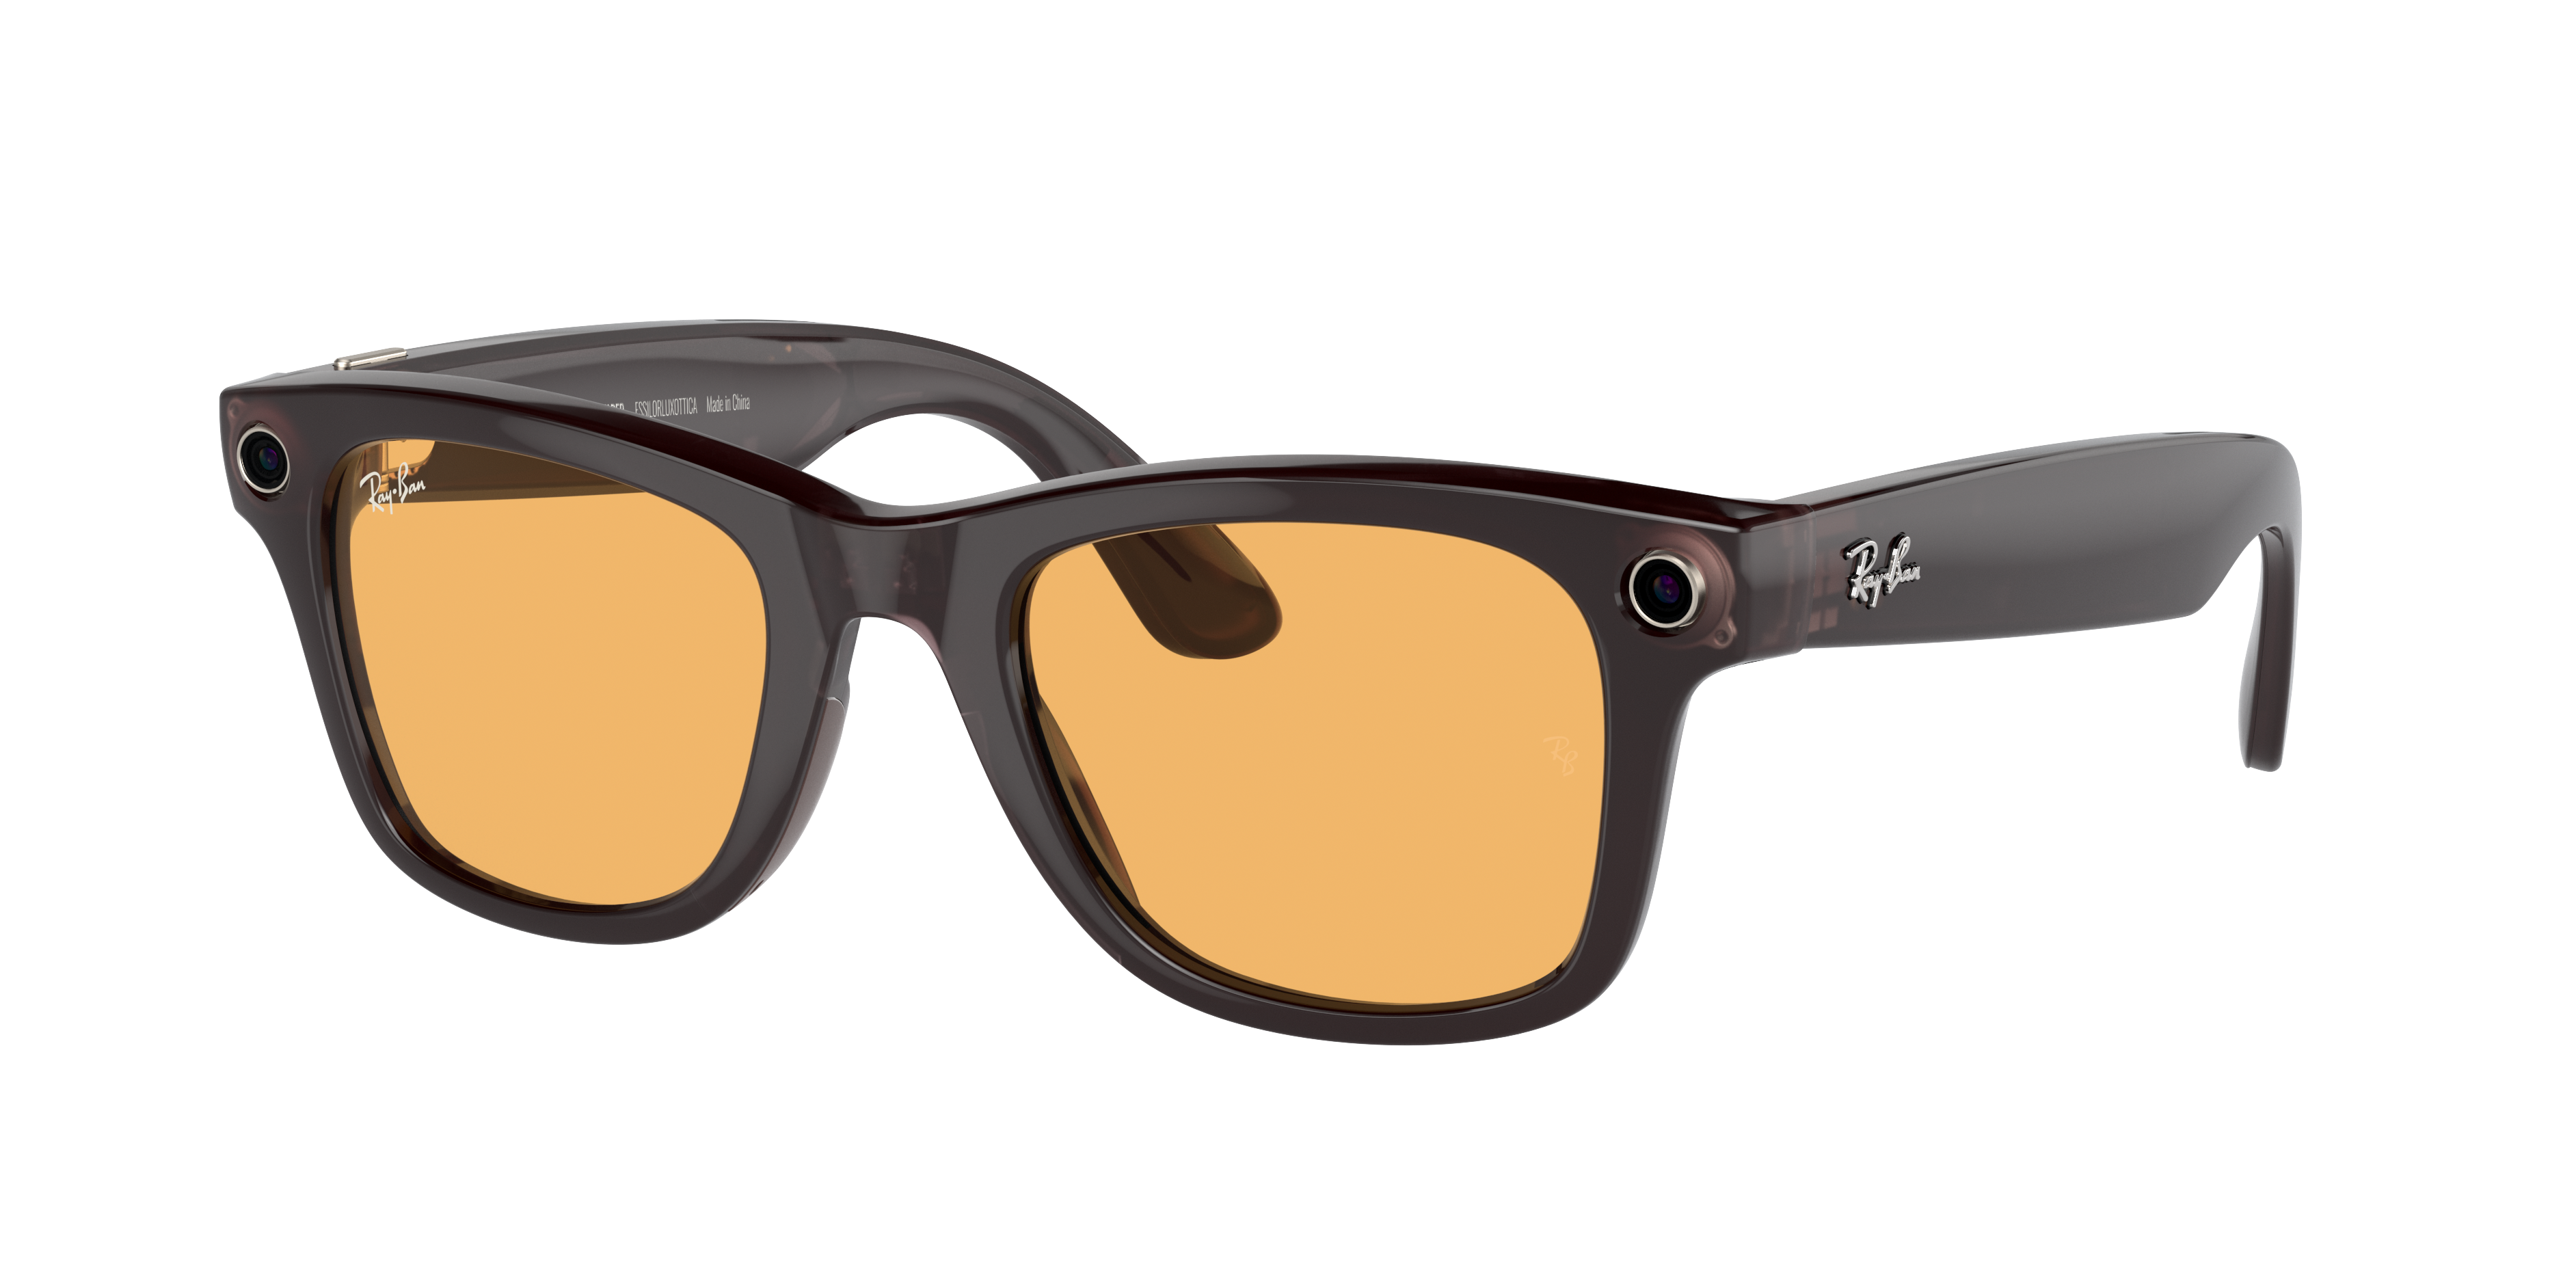 Ray-Ban | Meta smart glasses 2023 | Ray-Ban® USA